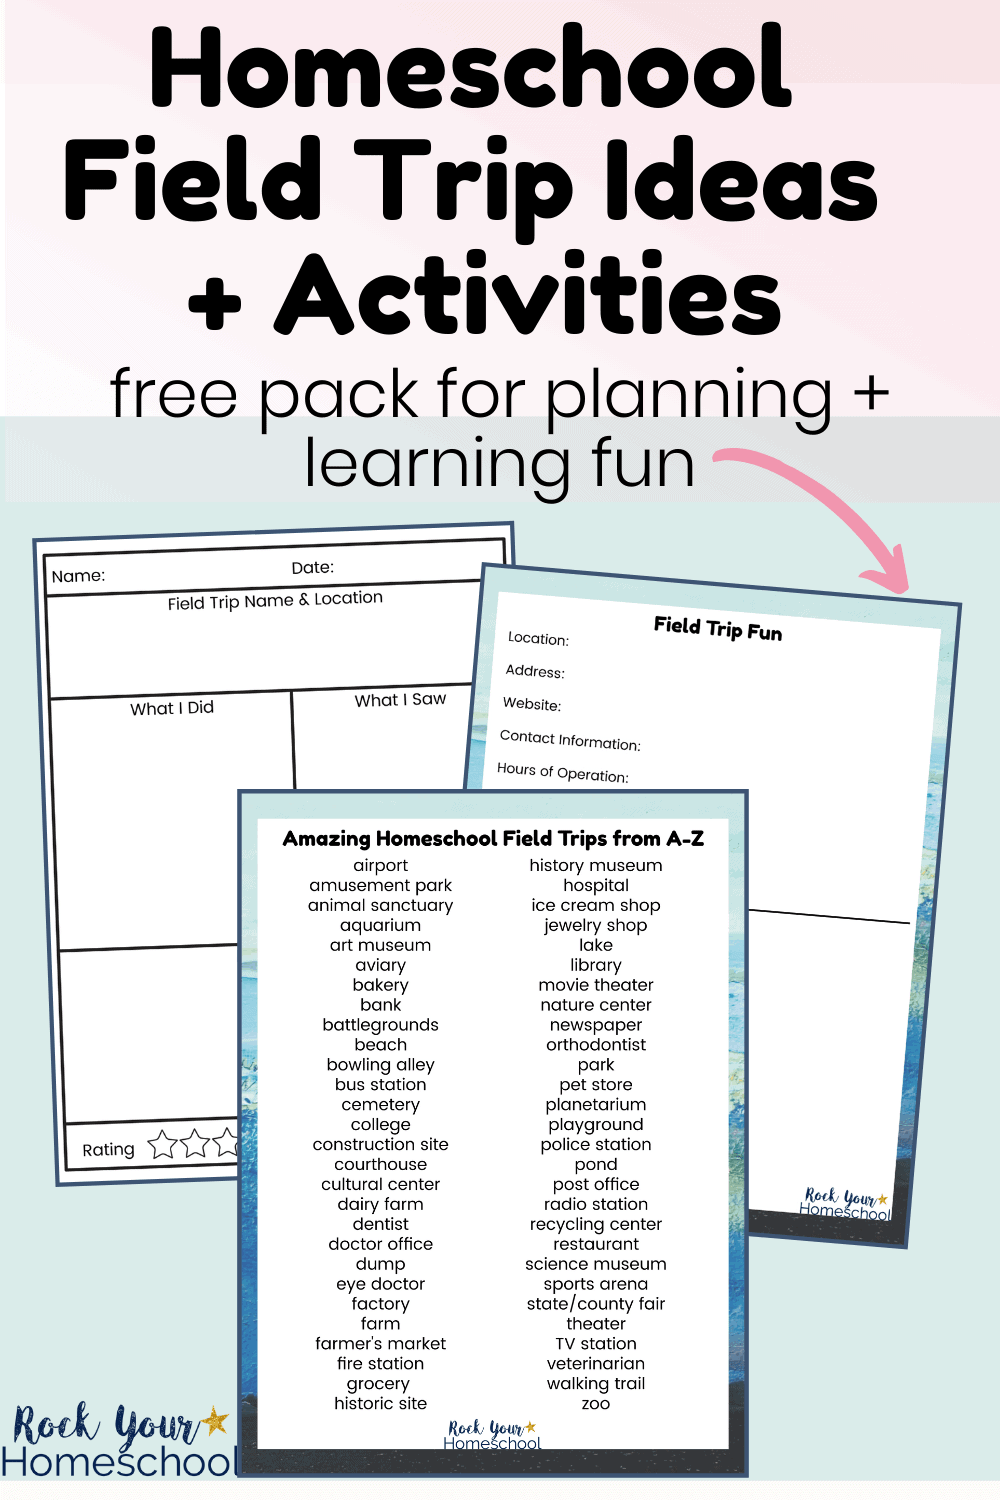 Homeschool Field Trip Ideas for Fantastic Learning Fun